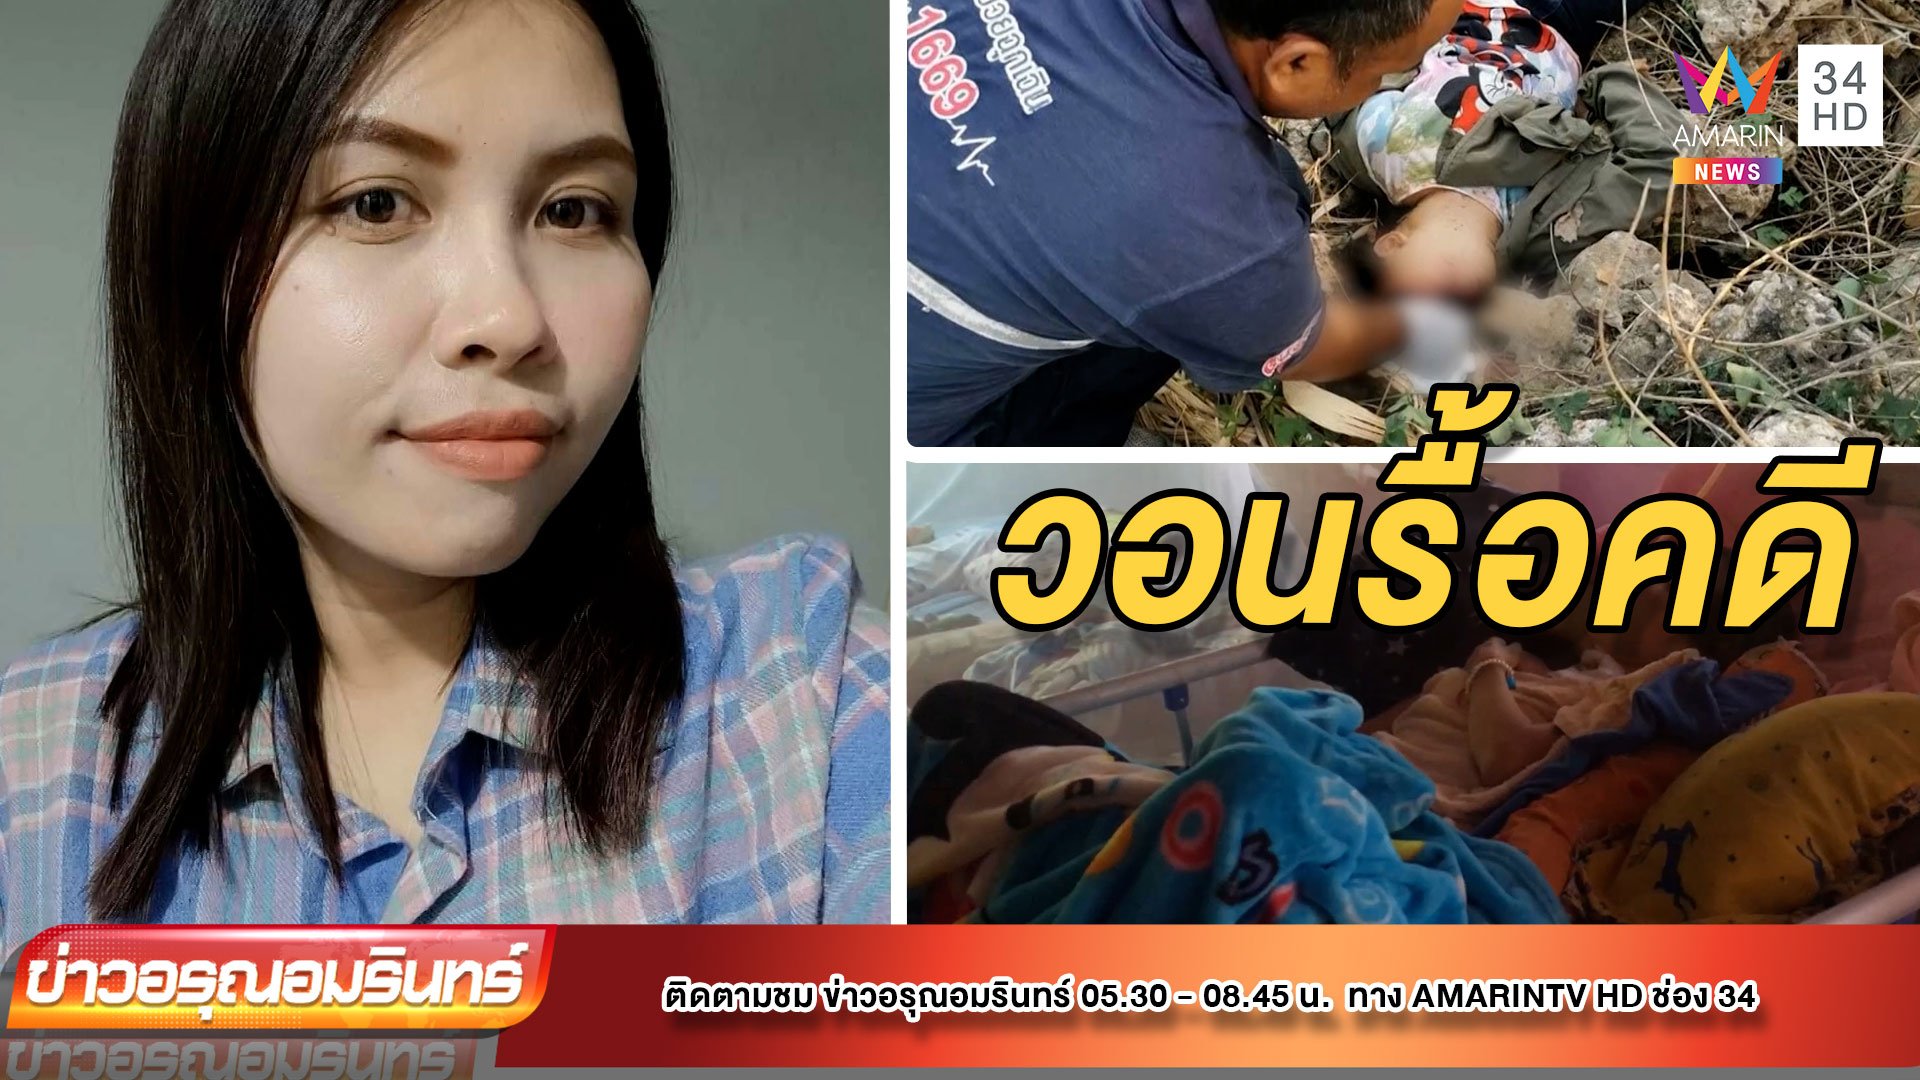 ญาติไม่เชื่อ สาวจยย.ล้มจนป่วยติดเตียง วอนตำรวจรื้อคดี | ข่าวอรุณอมรินทร์ | 24 ธ.ค. 64 | AMARIN TVHD34